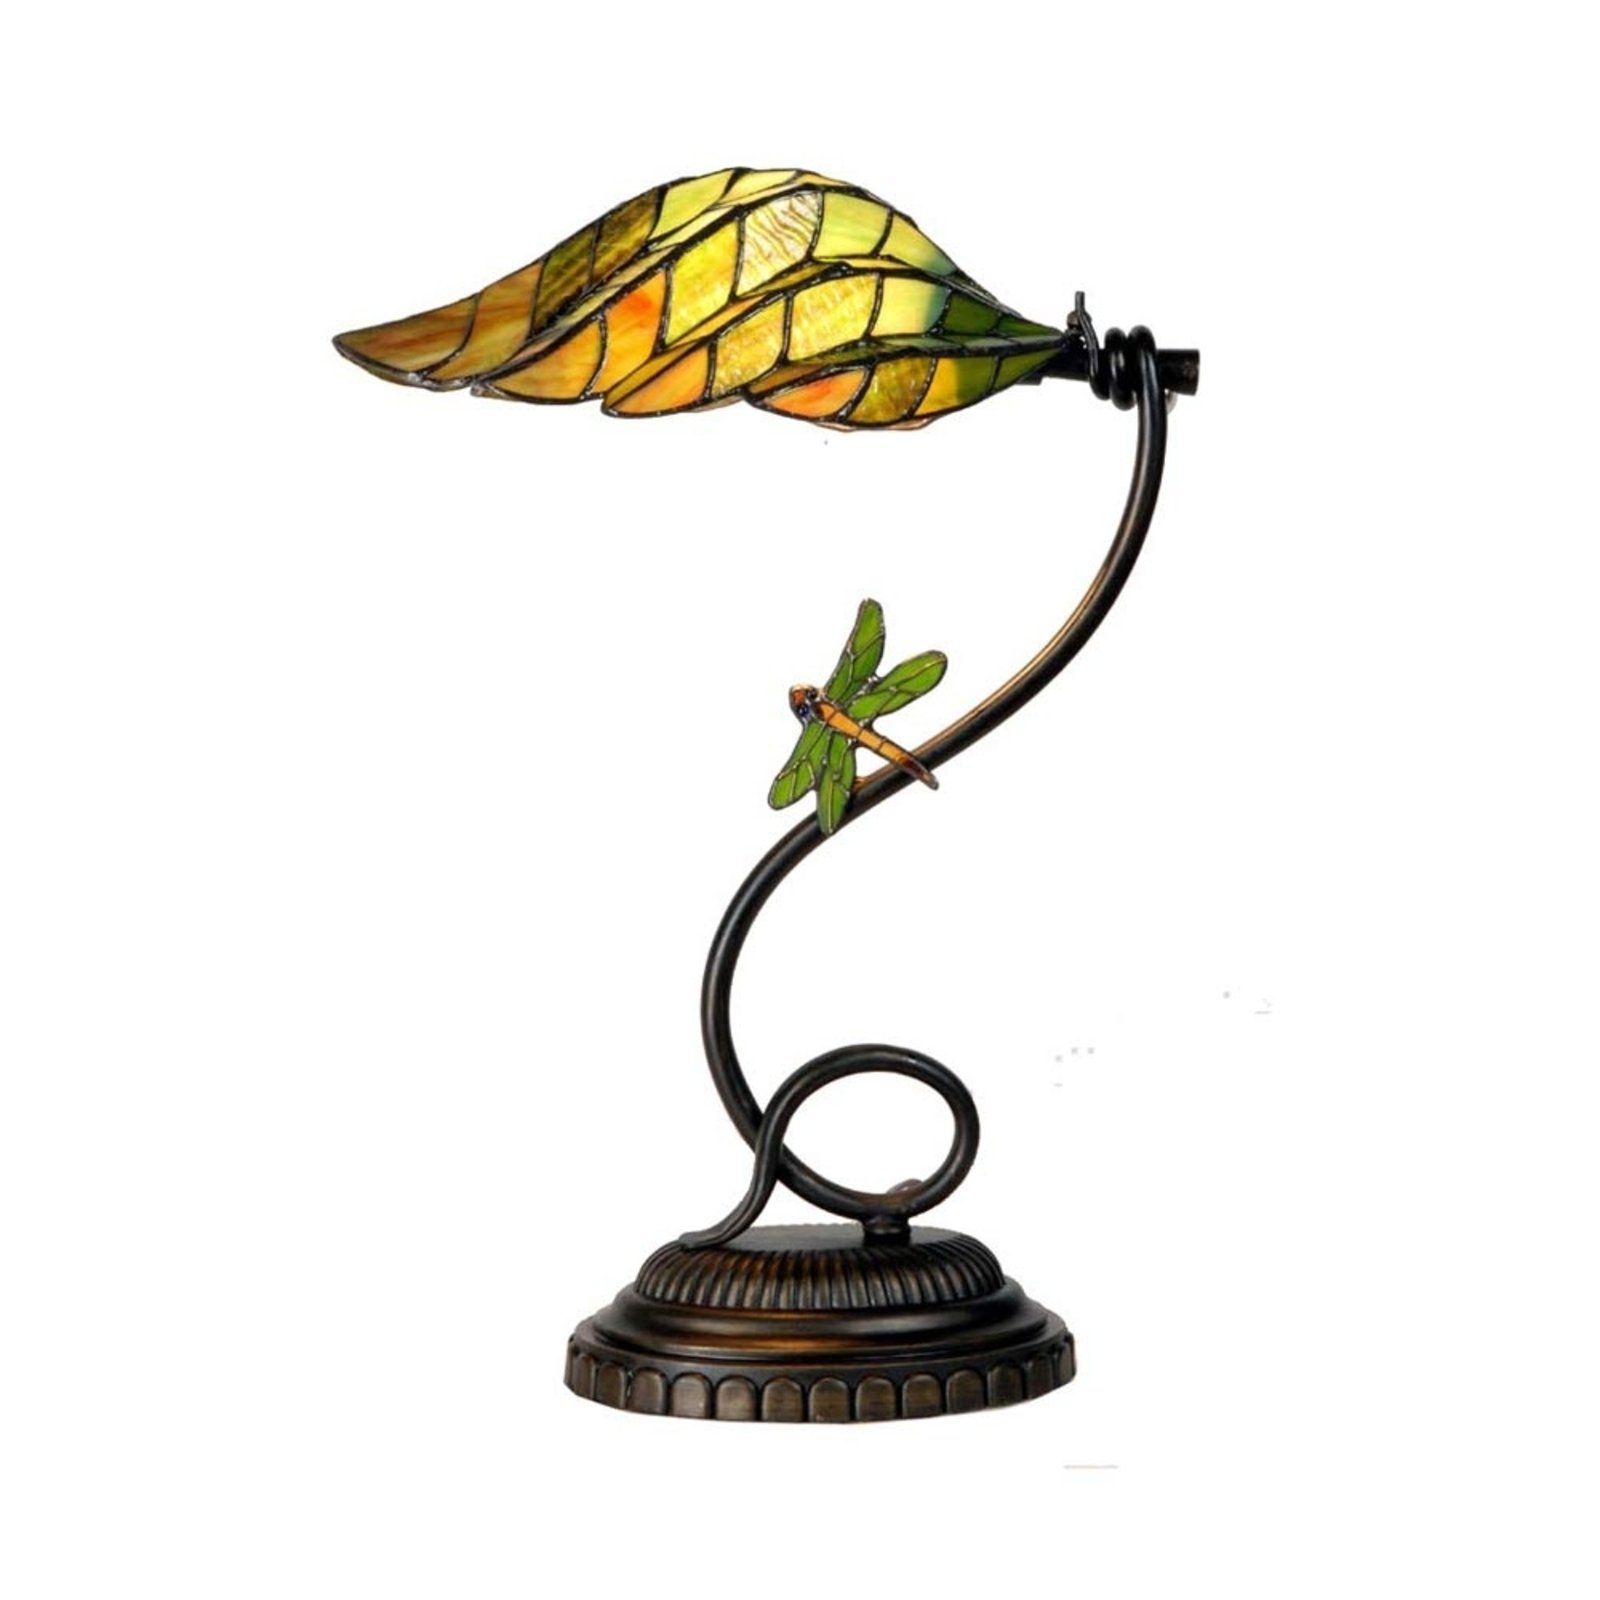 Leaf gustowna lampa stołowa styl Tiffany